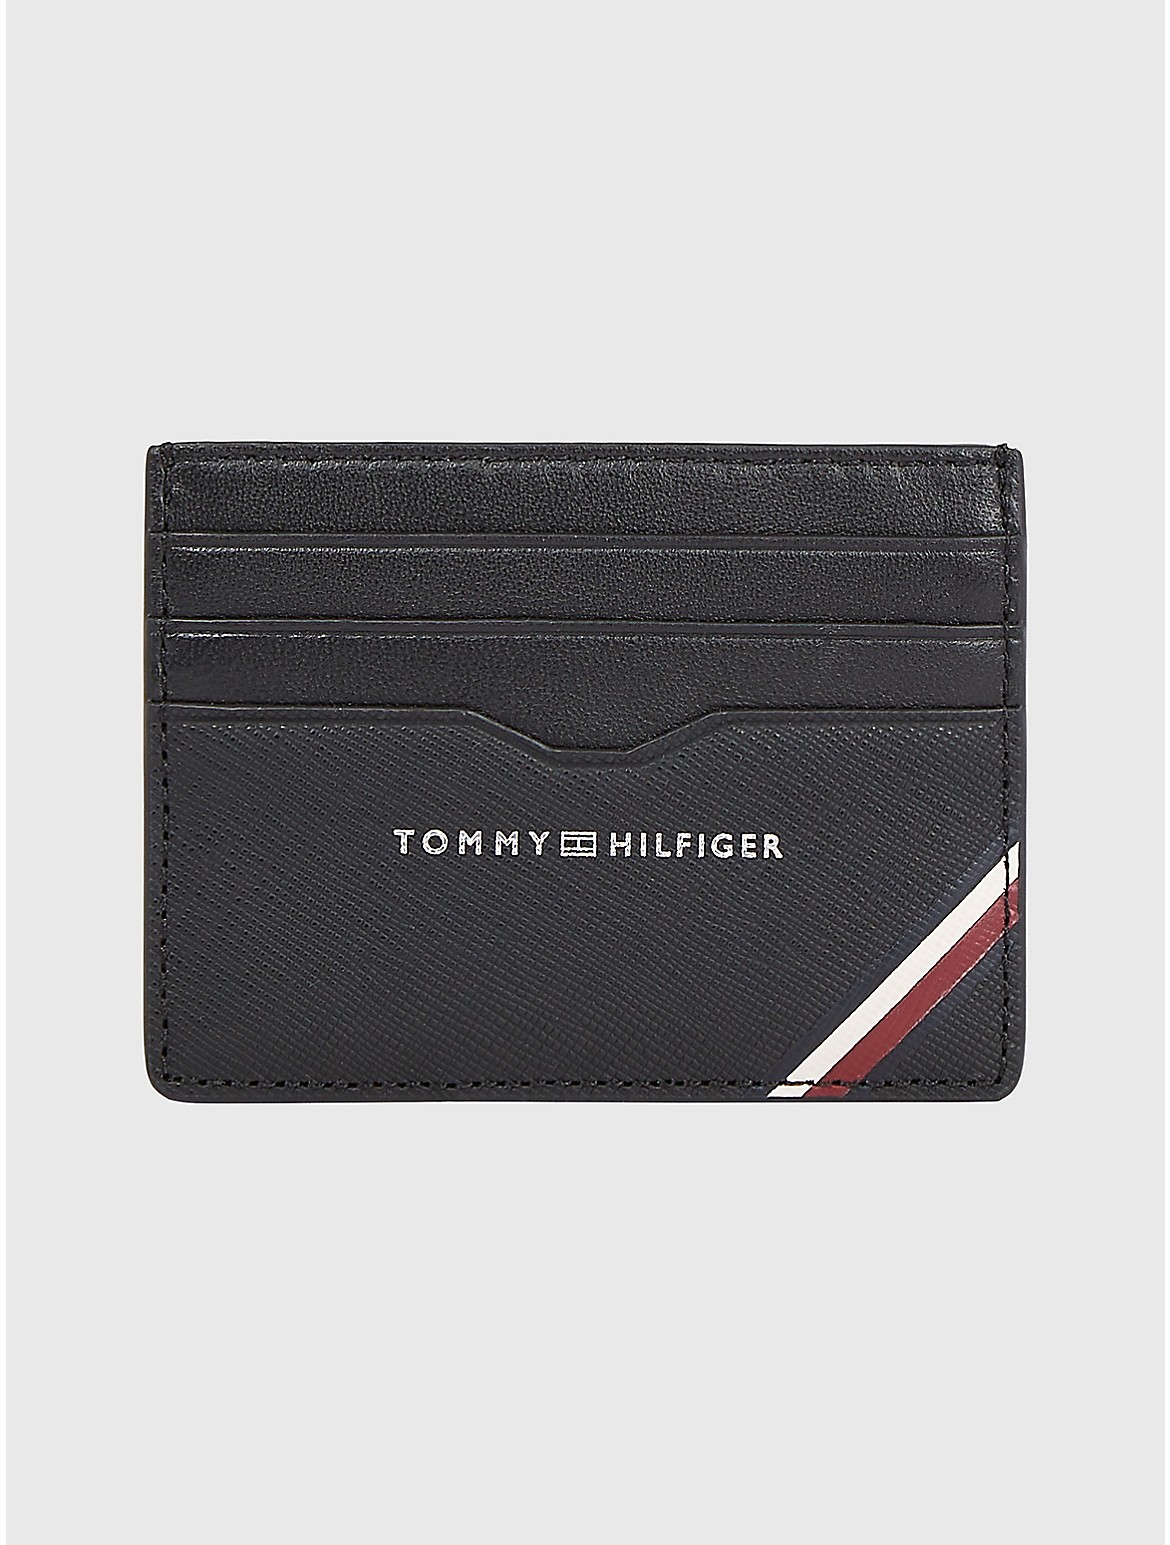 Tommy Hilfiger Men's Stripe Leather Credit Card Holder - Black